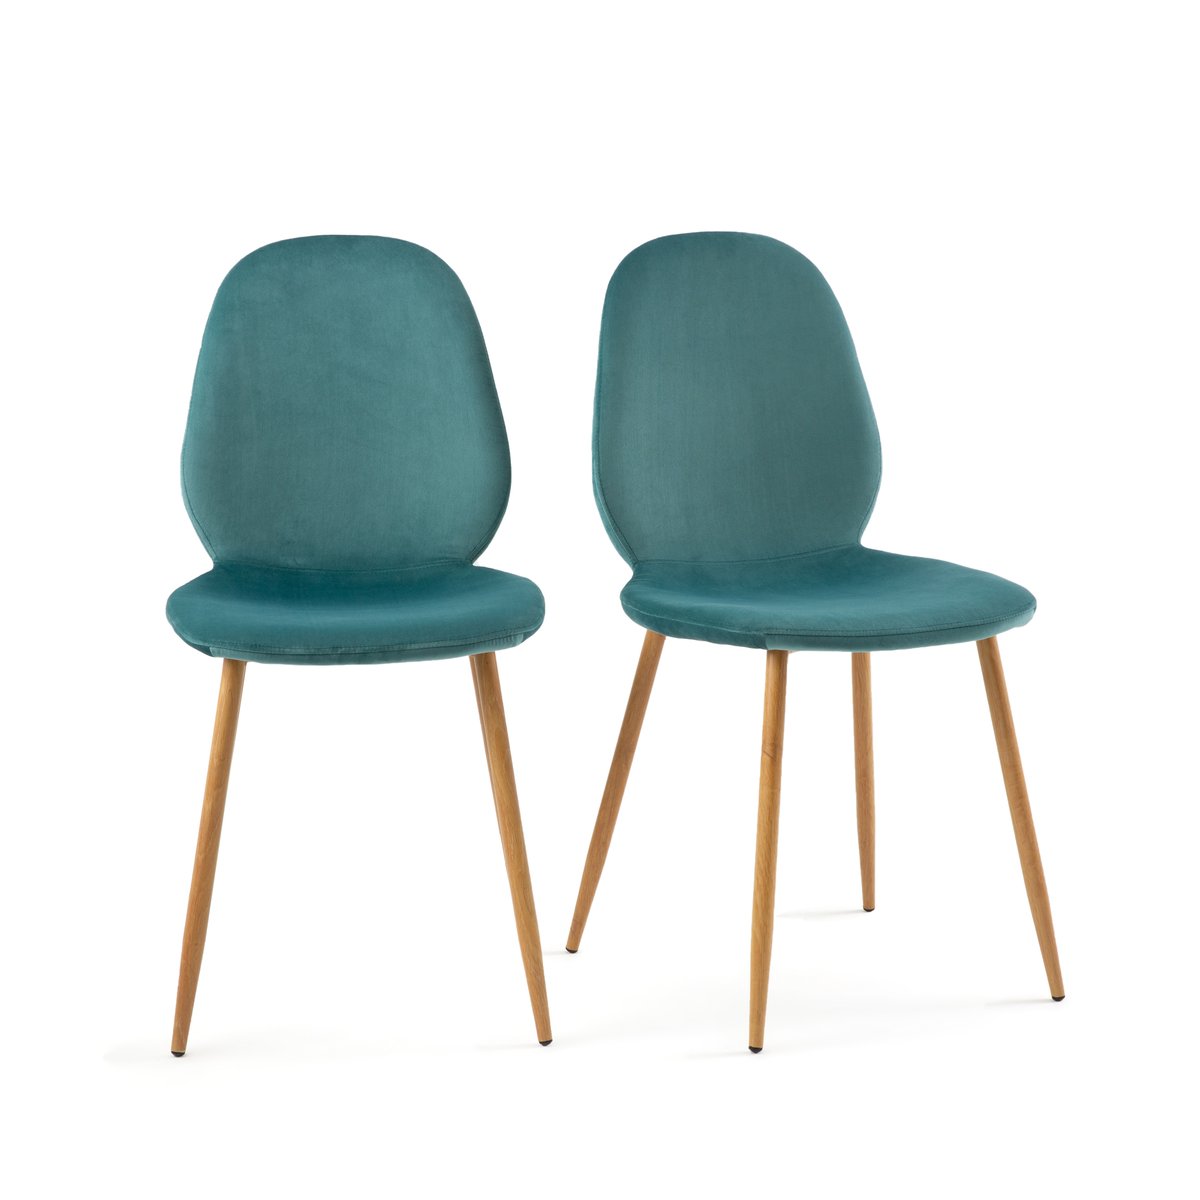 Комплект из 2 стульев для Столовой Lavergne единый размер зеленый